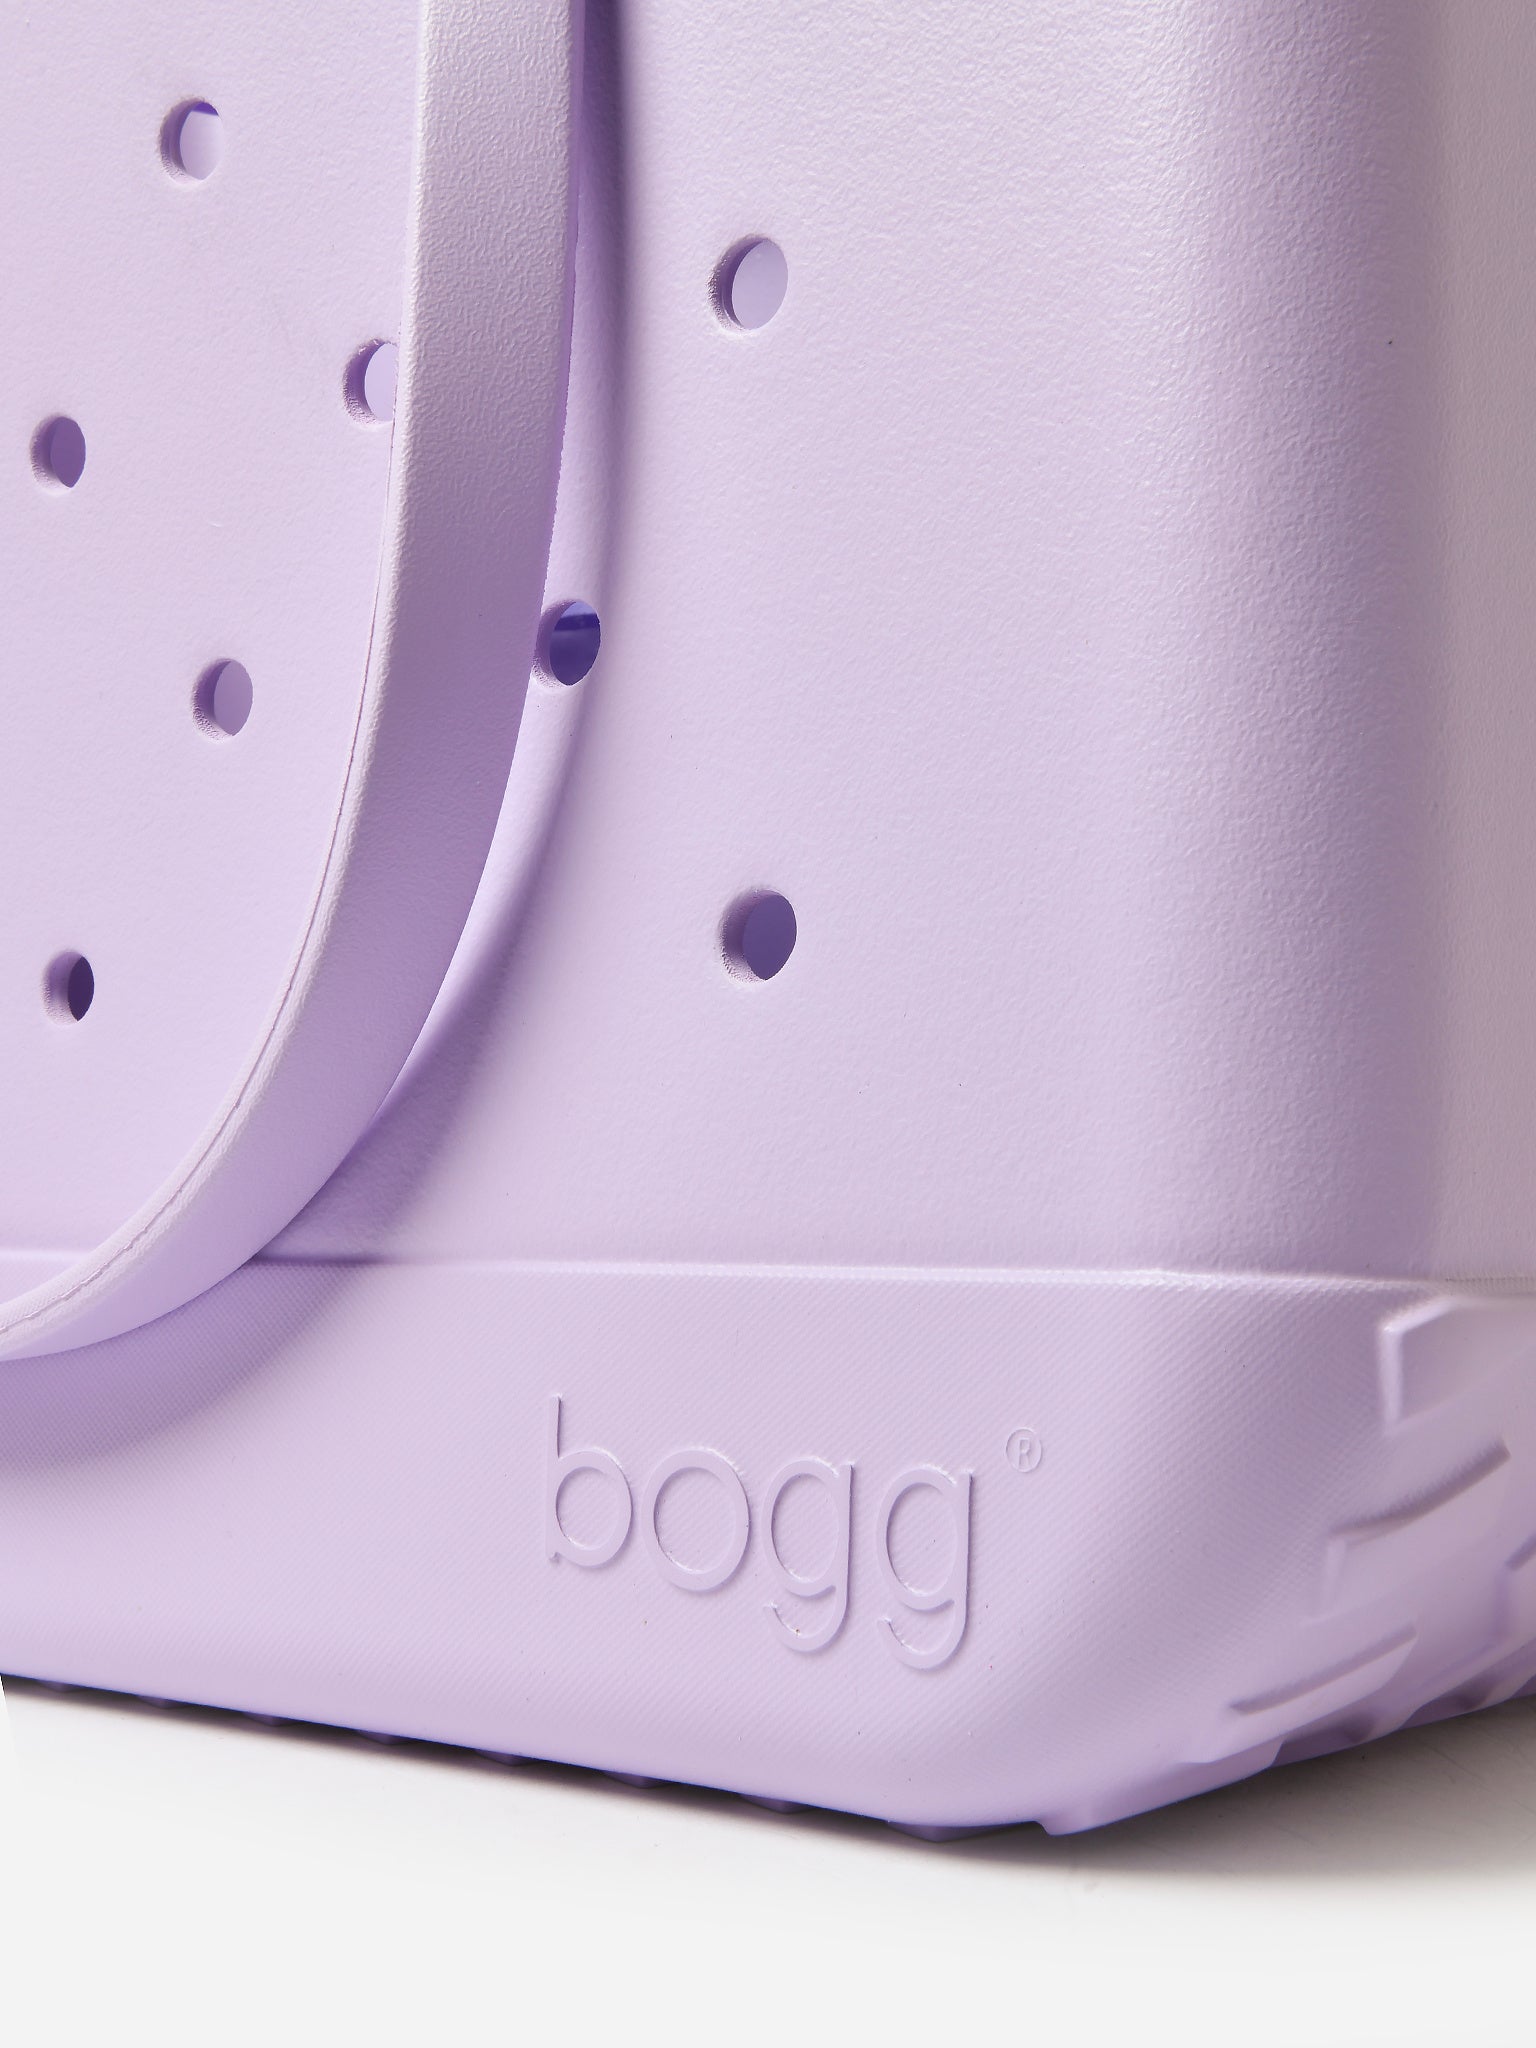 Bogg Bag Original Bogg Bag in Lilac